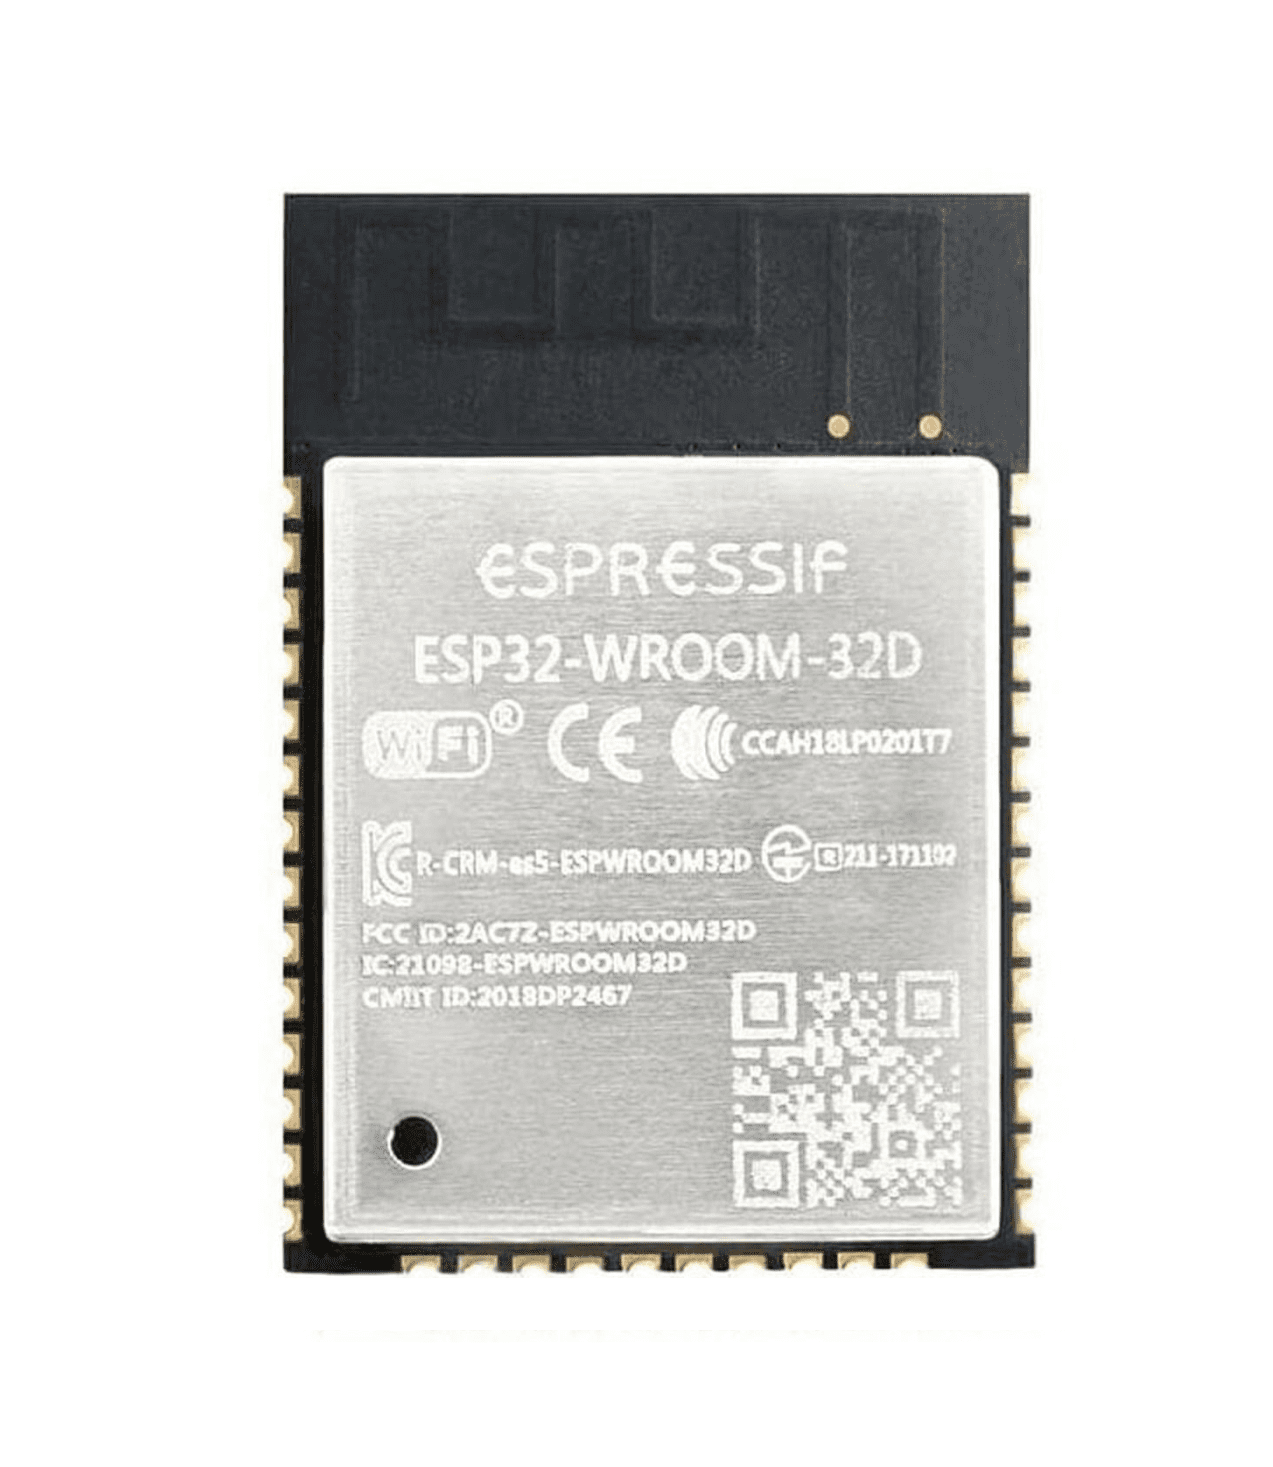 Module Expressif ESP32-WROOM-32D 4M 32Mbit